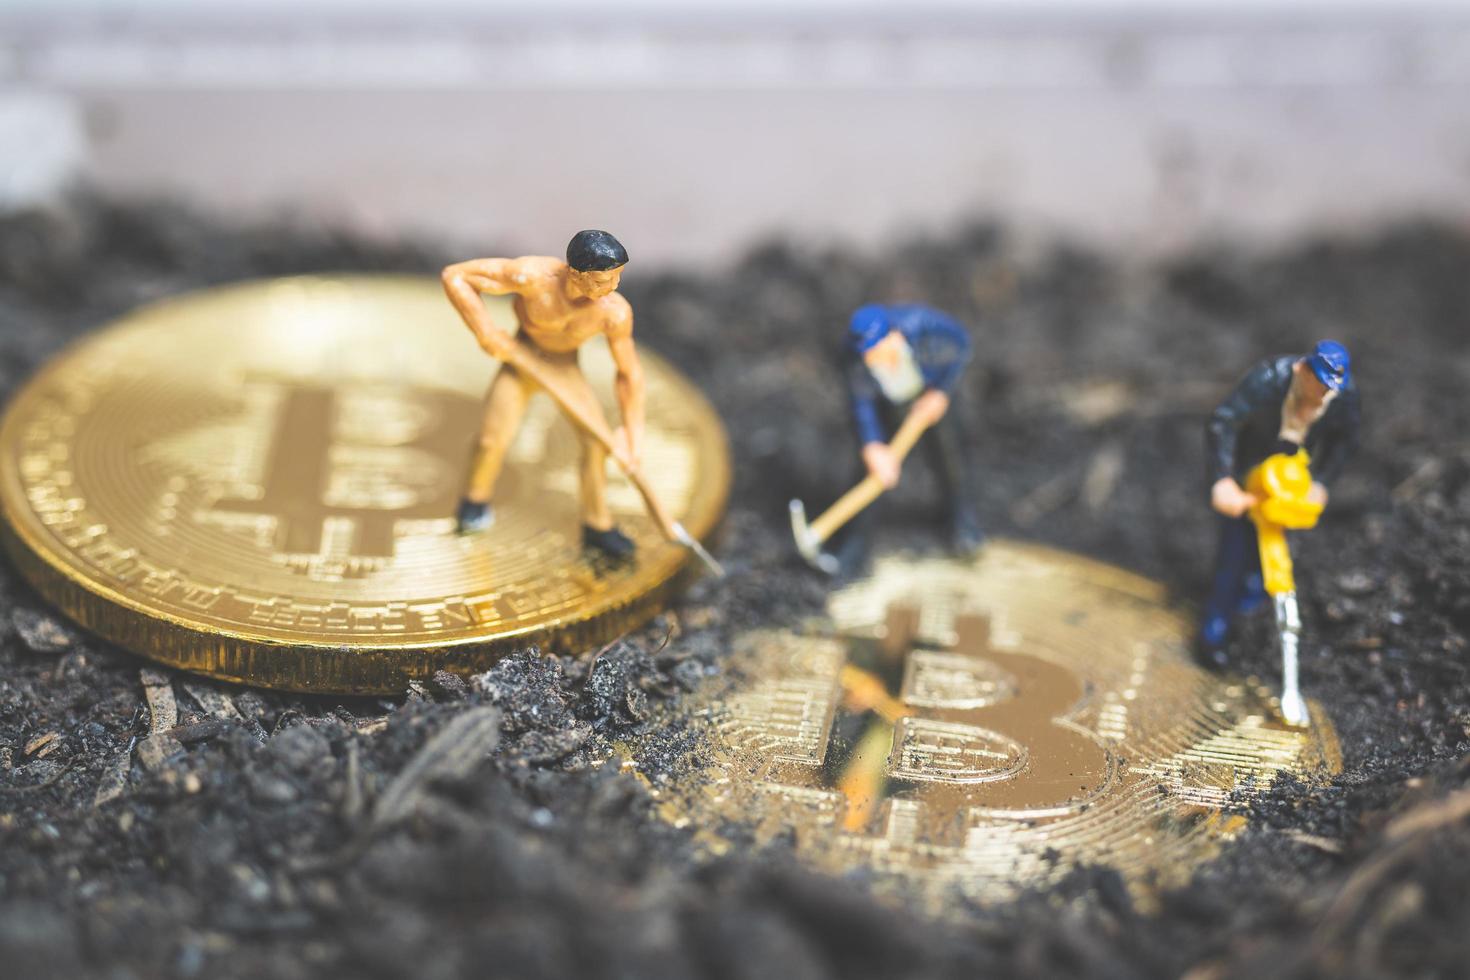 trabalhadores em miniatura cavando o chão para descobrir criptomoeda bitcoin brilhante, conceito de trabalho bem-sucedido foto